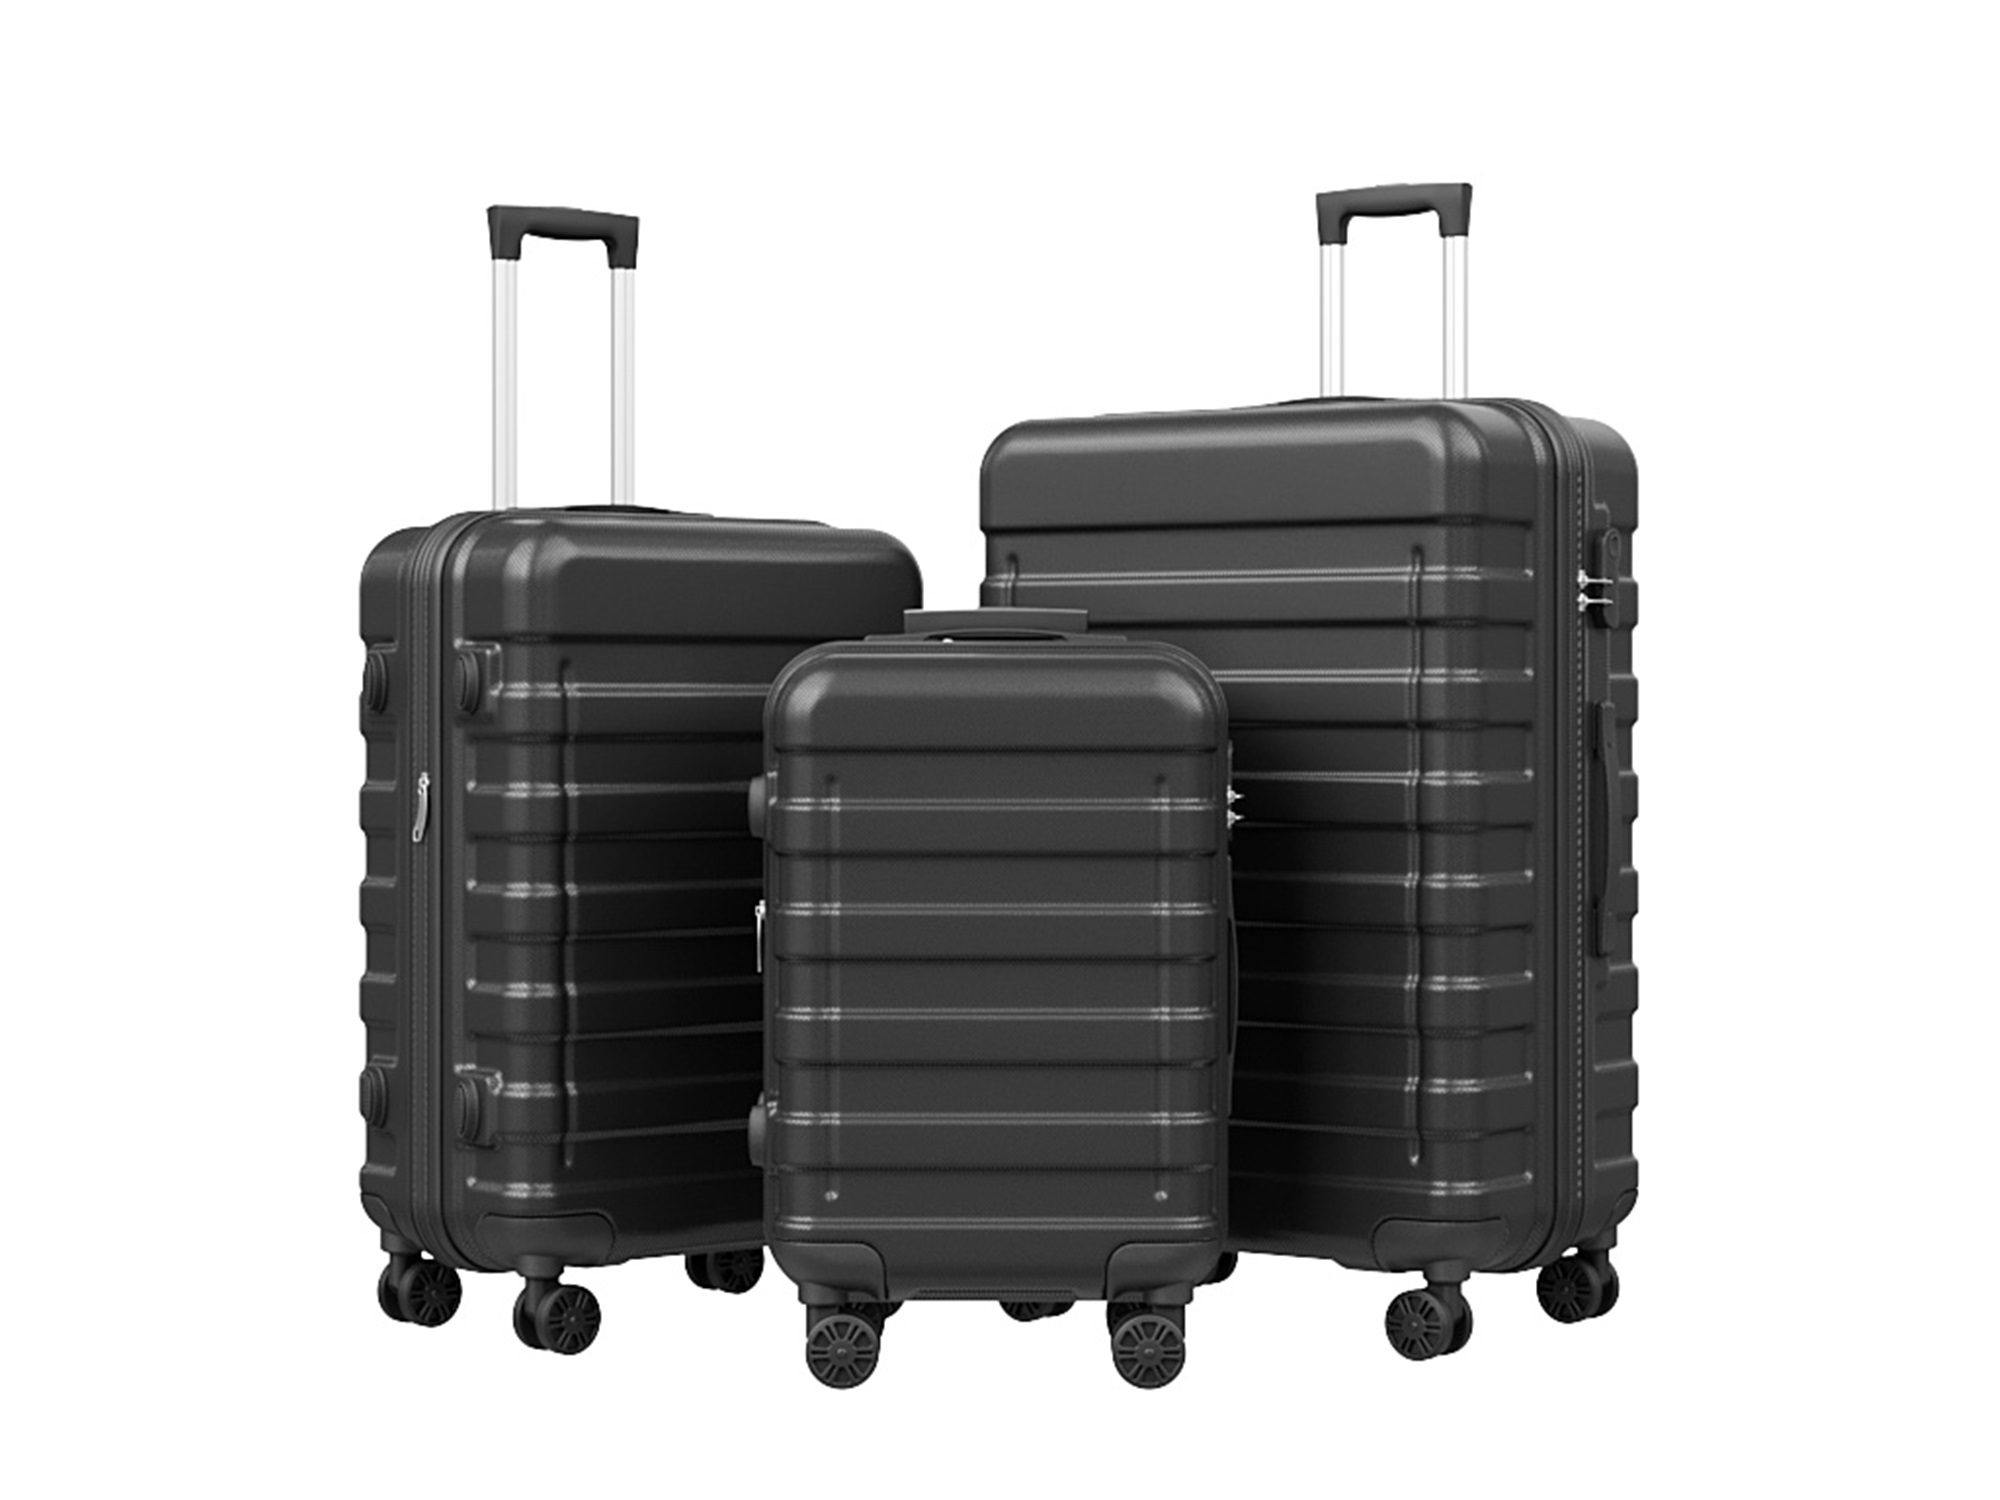 Homgarden 3pcs (22/26/30 inch) Travel Luggage Set Expandable Hardside Suitcase Spinner Wheels Black, Size: Three Size